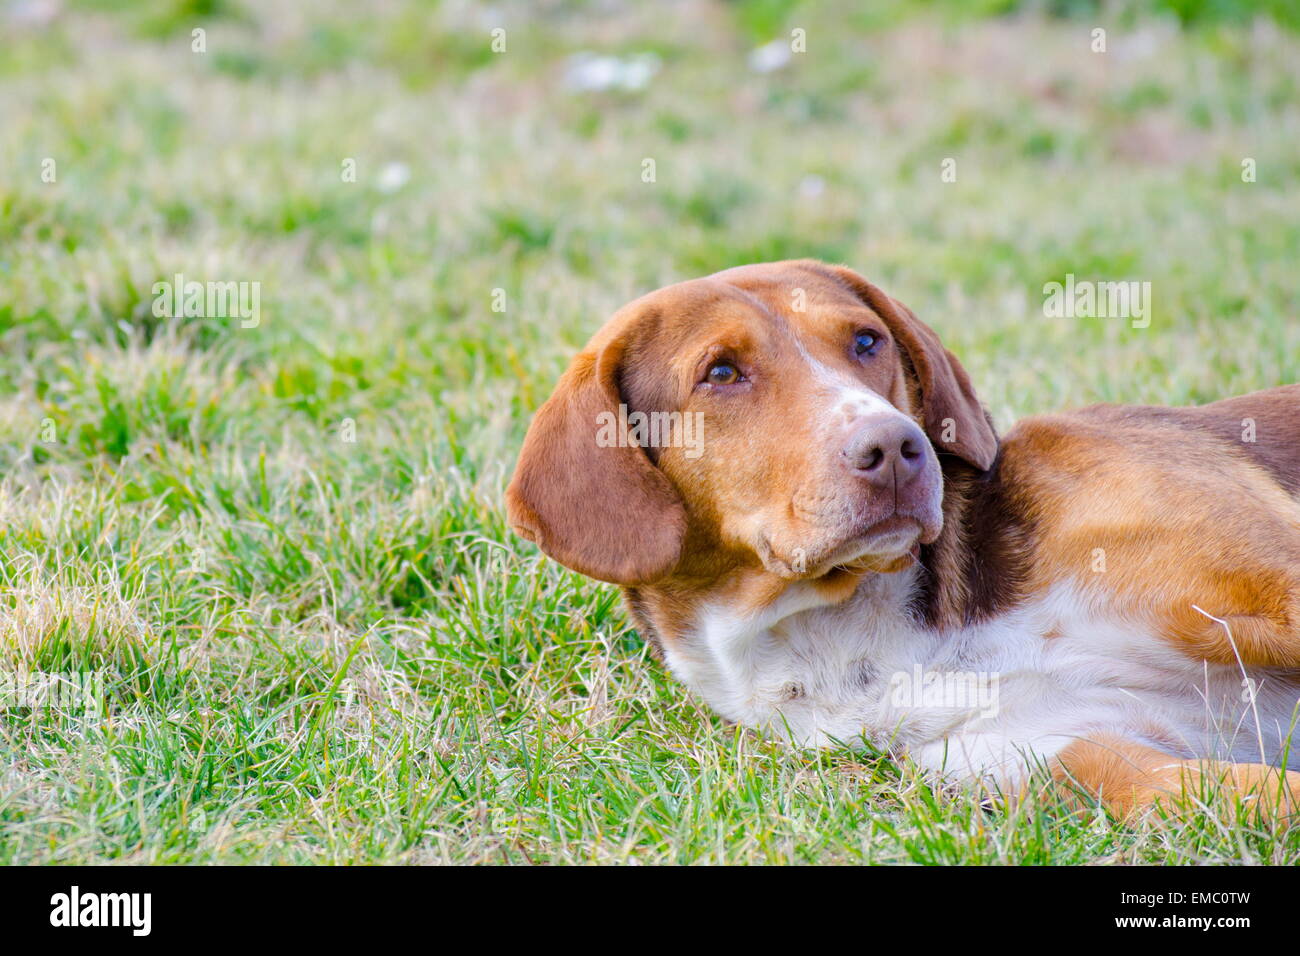 Triste vecchio cane con arancio rossastro fur giacente in erba Foto Stock